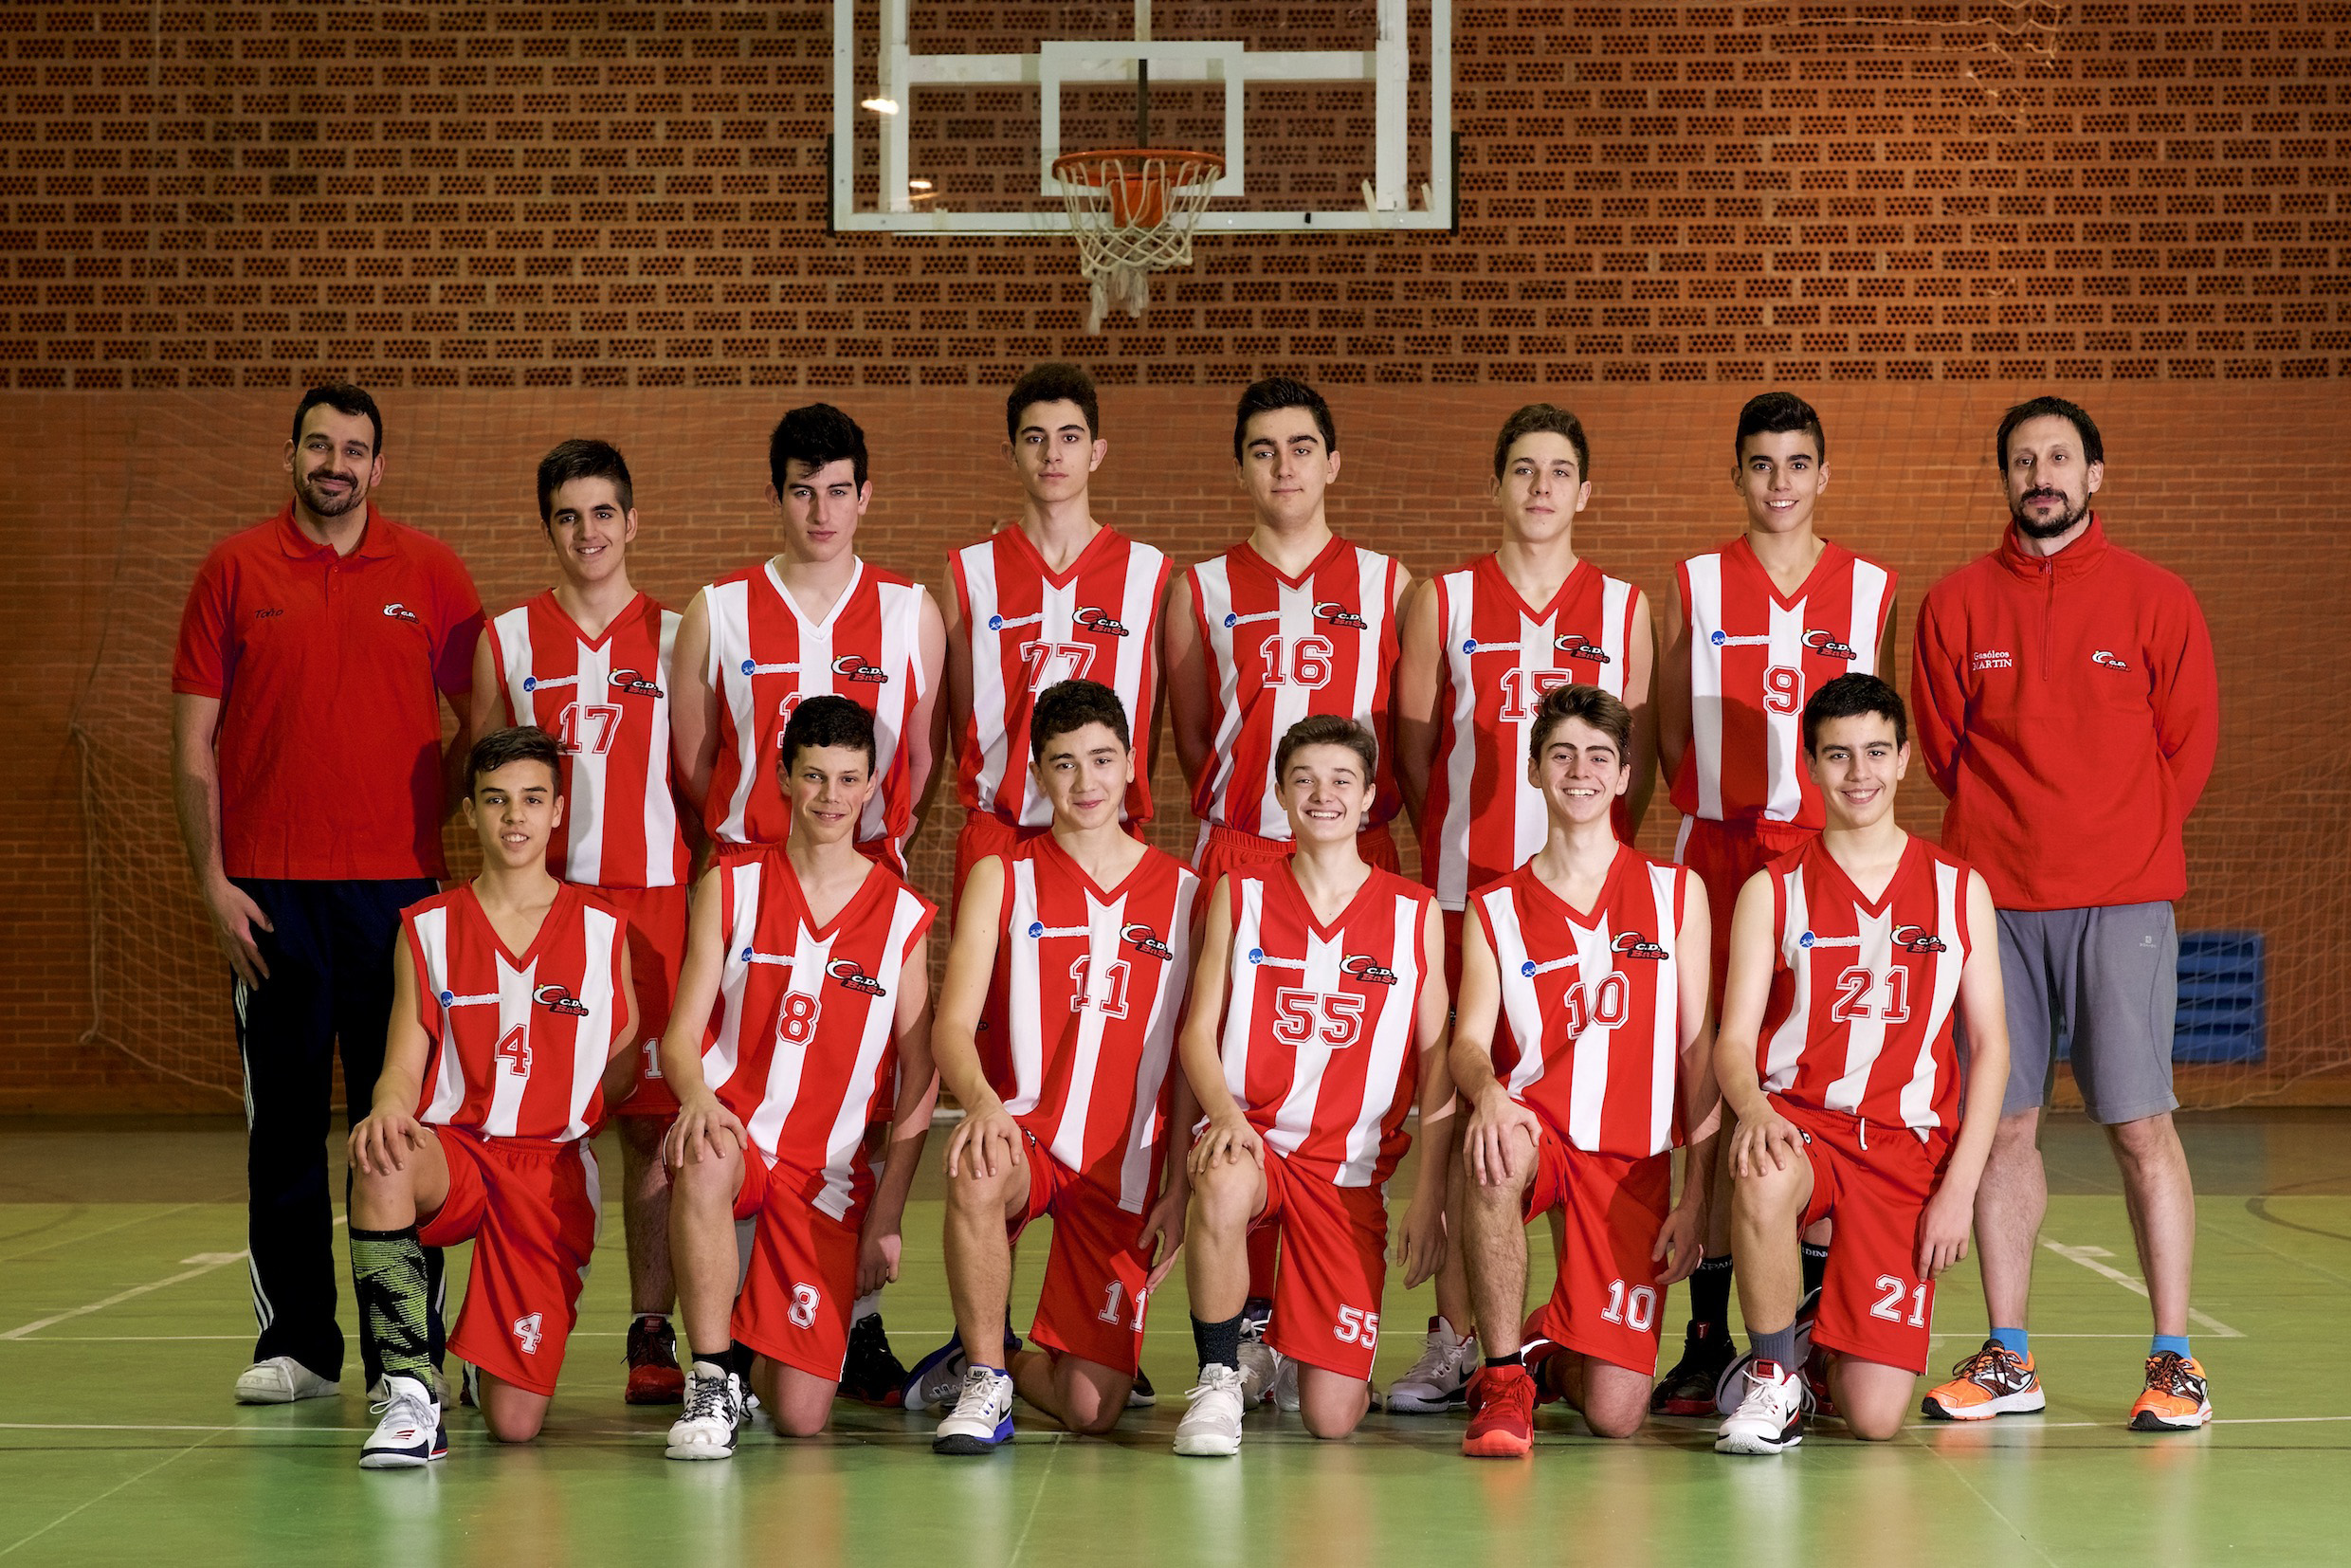 El Club Deportivo Baloncesto Segovia opta al título de liga en categoría cadete masculino